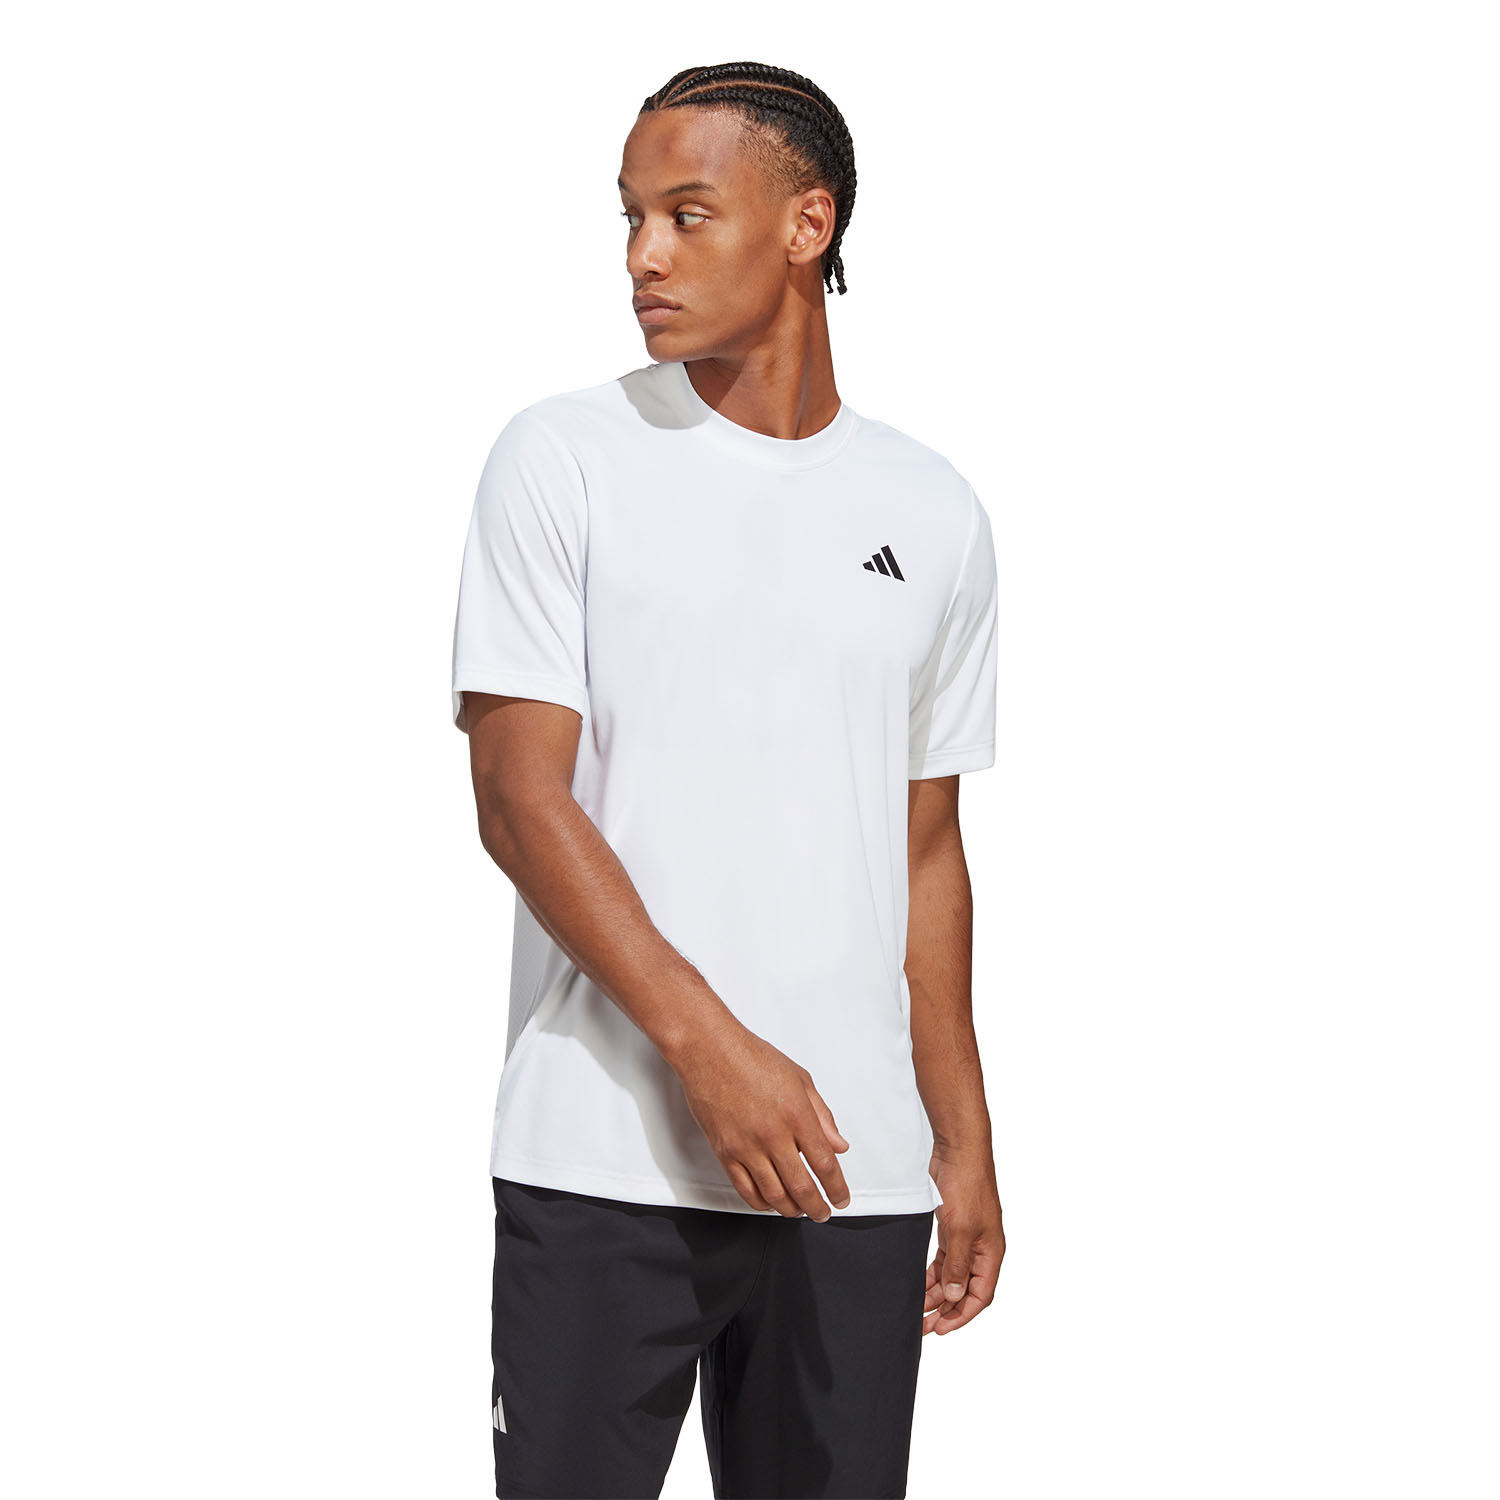 adidas Club T-Shirt - White